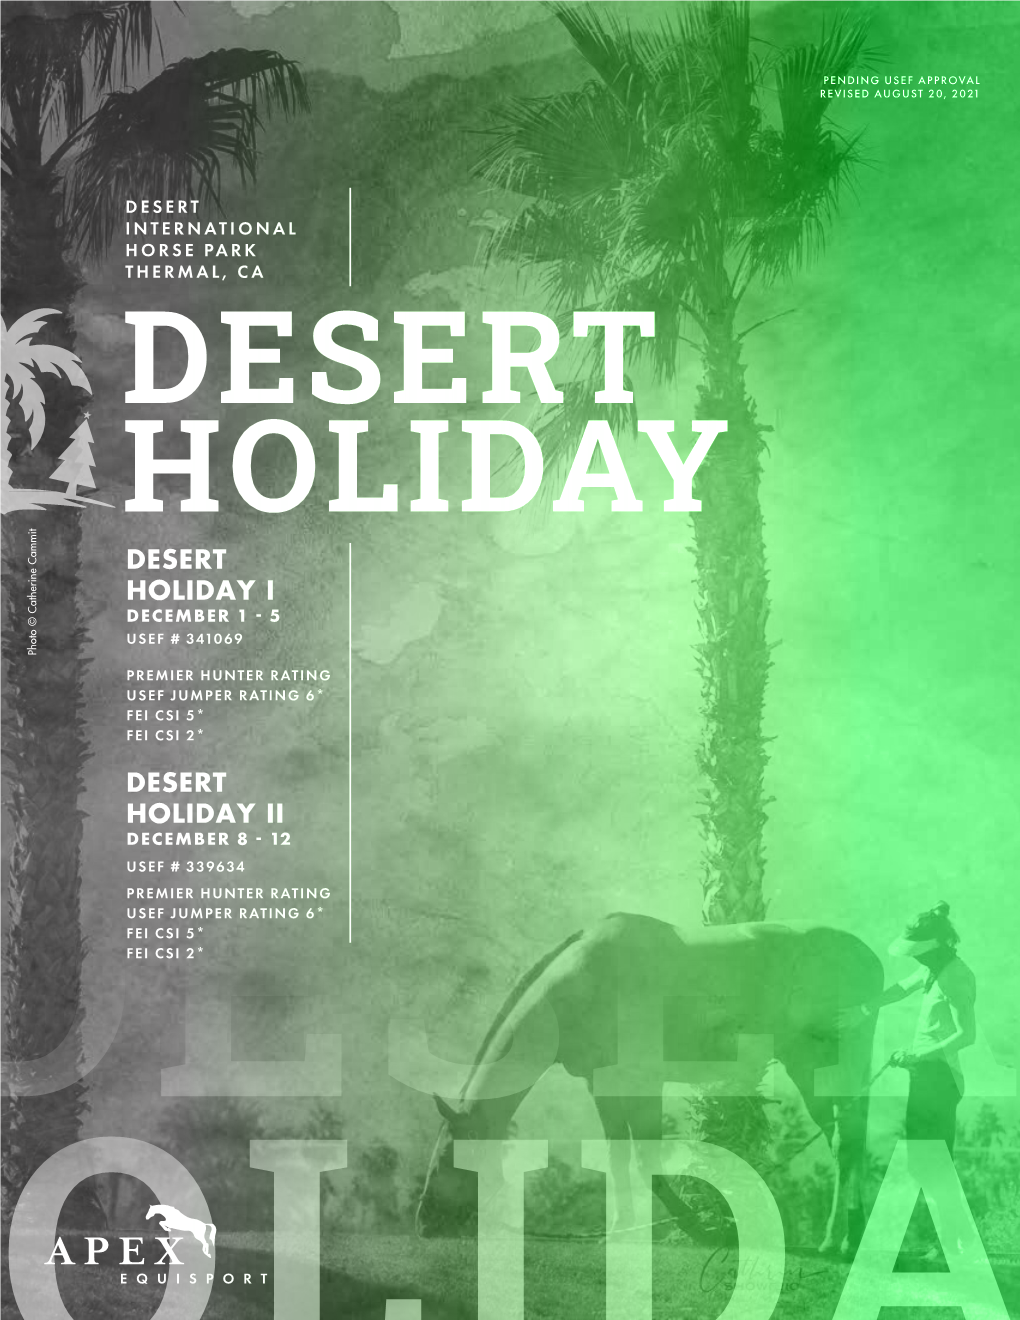 Desert Holiday I December 1 - 5 Usef # 341069